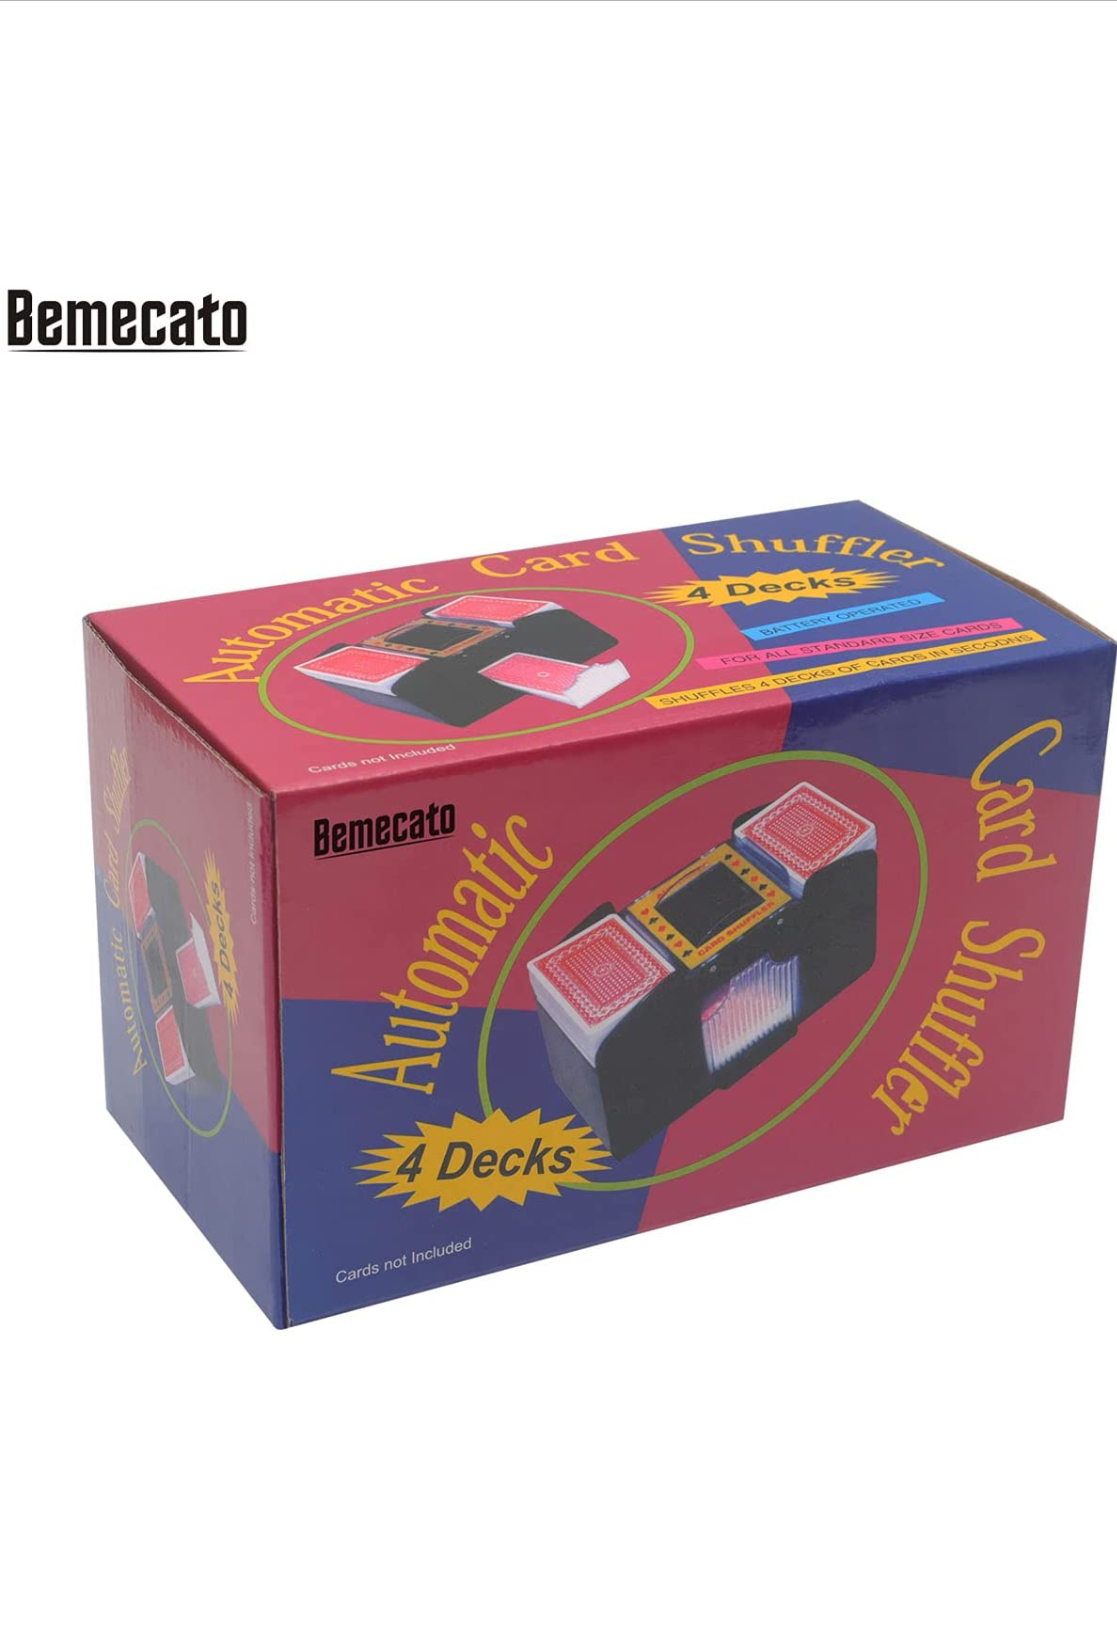 Photo 7 of Bemecato Card Shuffler 124 Deck Automatic Electric Casino Shuffler Machine for Playing Card UNO